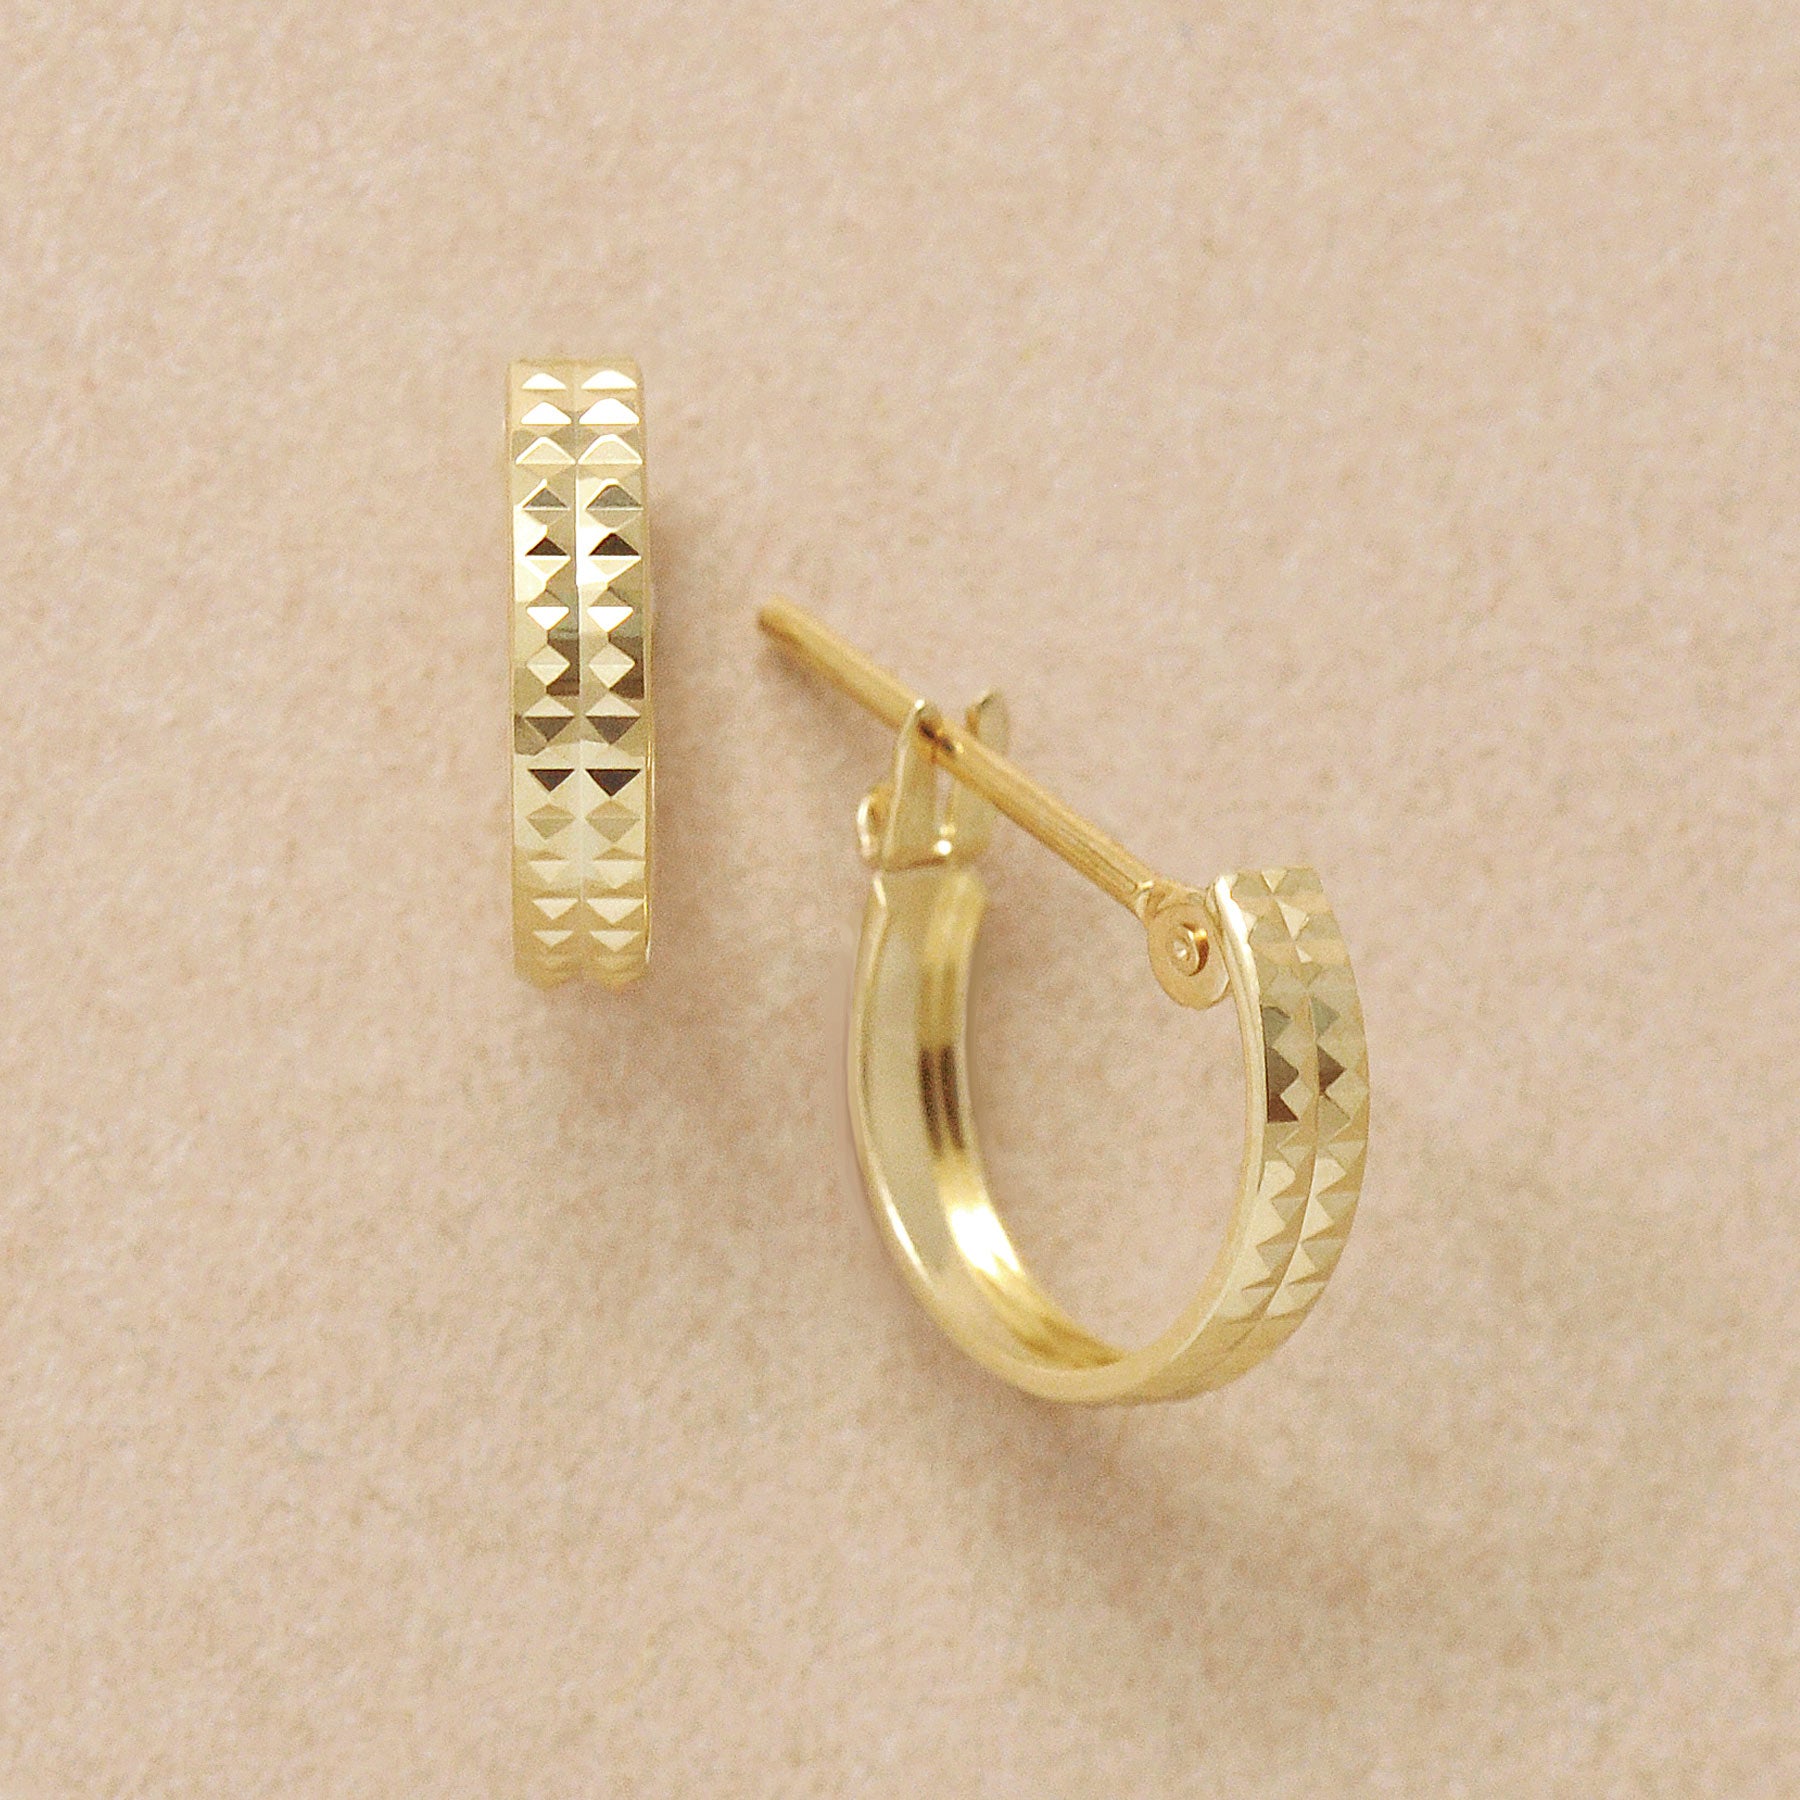 18K/10K Pyramid Cut Hoop Earrings (Yellow Gold) - Product Image